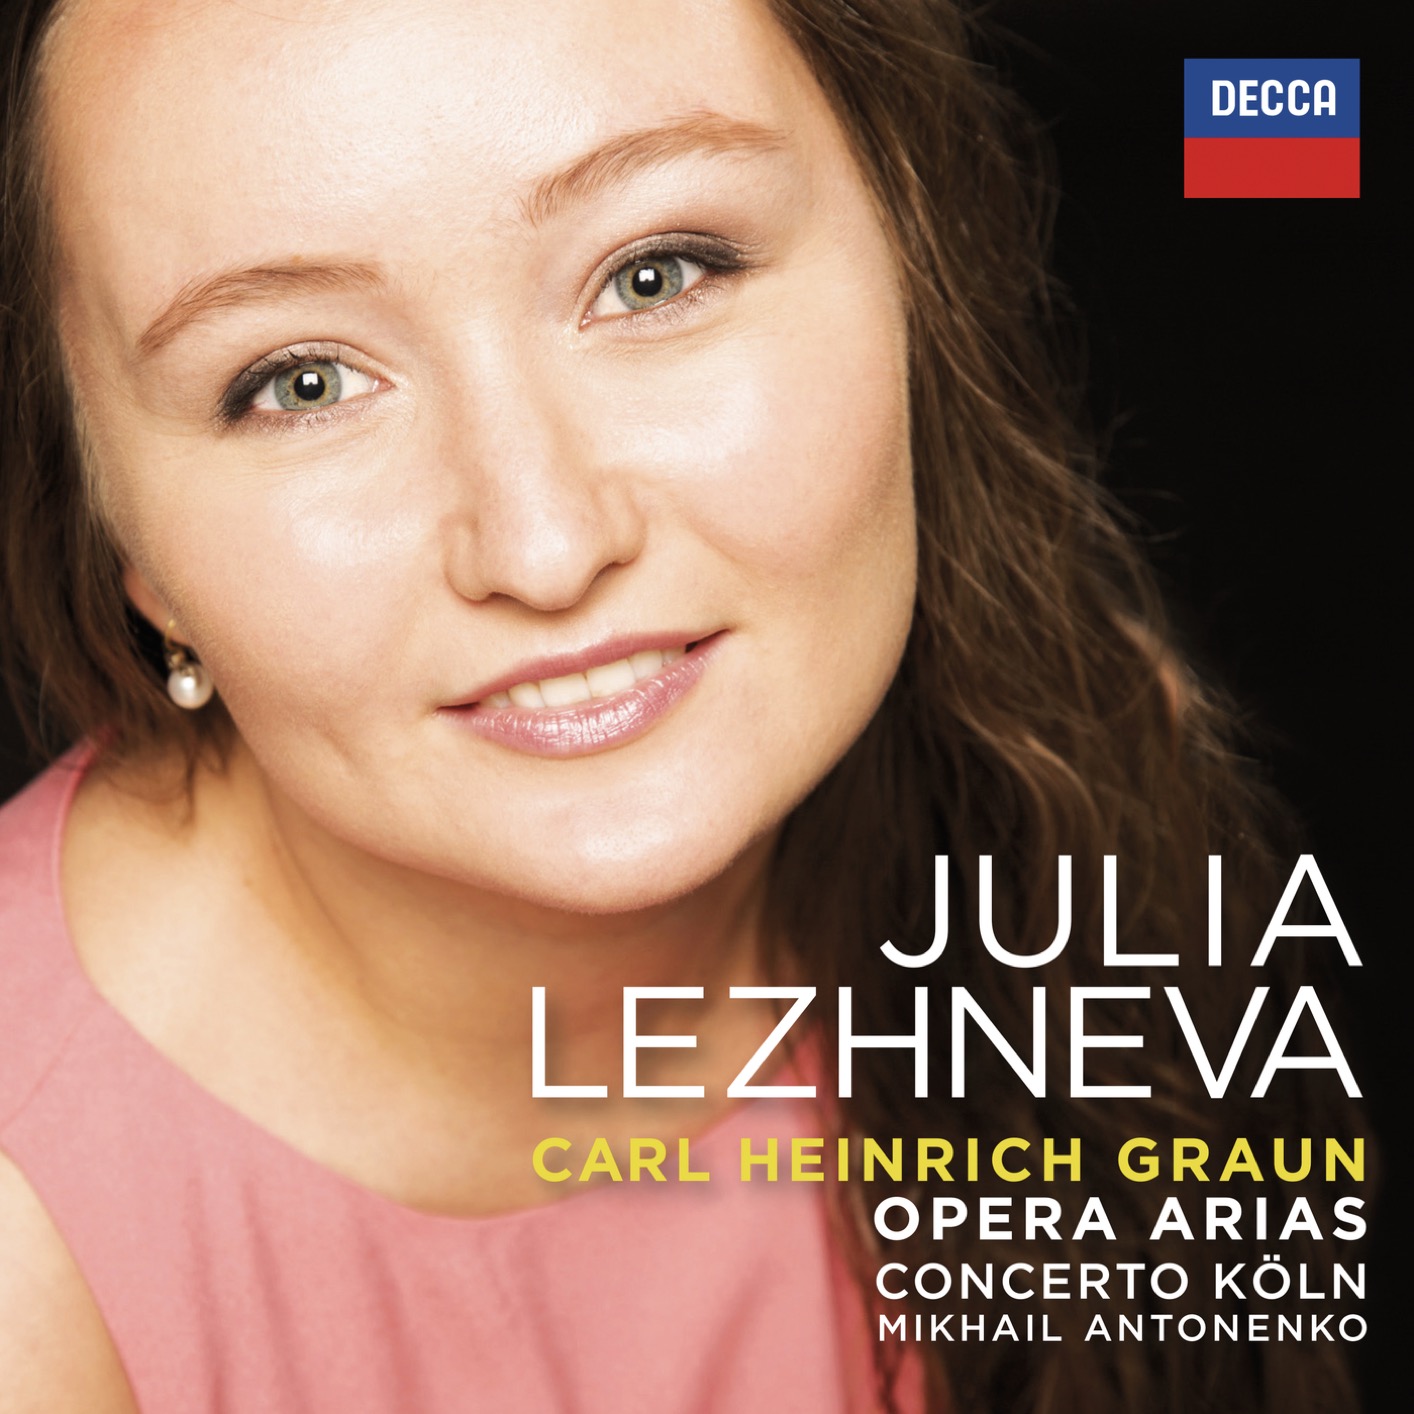 Julia Lezhneva, Concerto Koln & Mikhail Antonenko – Graun: Opera Arias (2017) [PrestoClassical FLAC 24bit/192kHz]